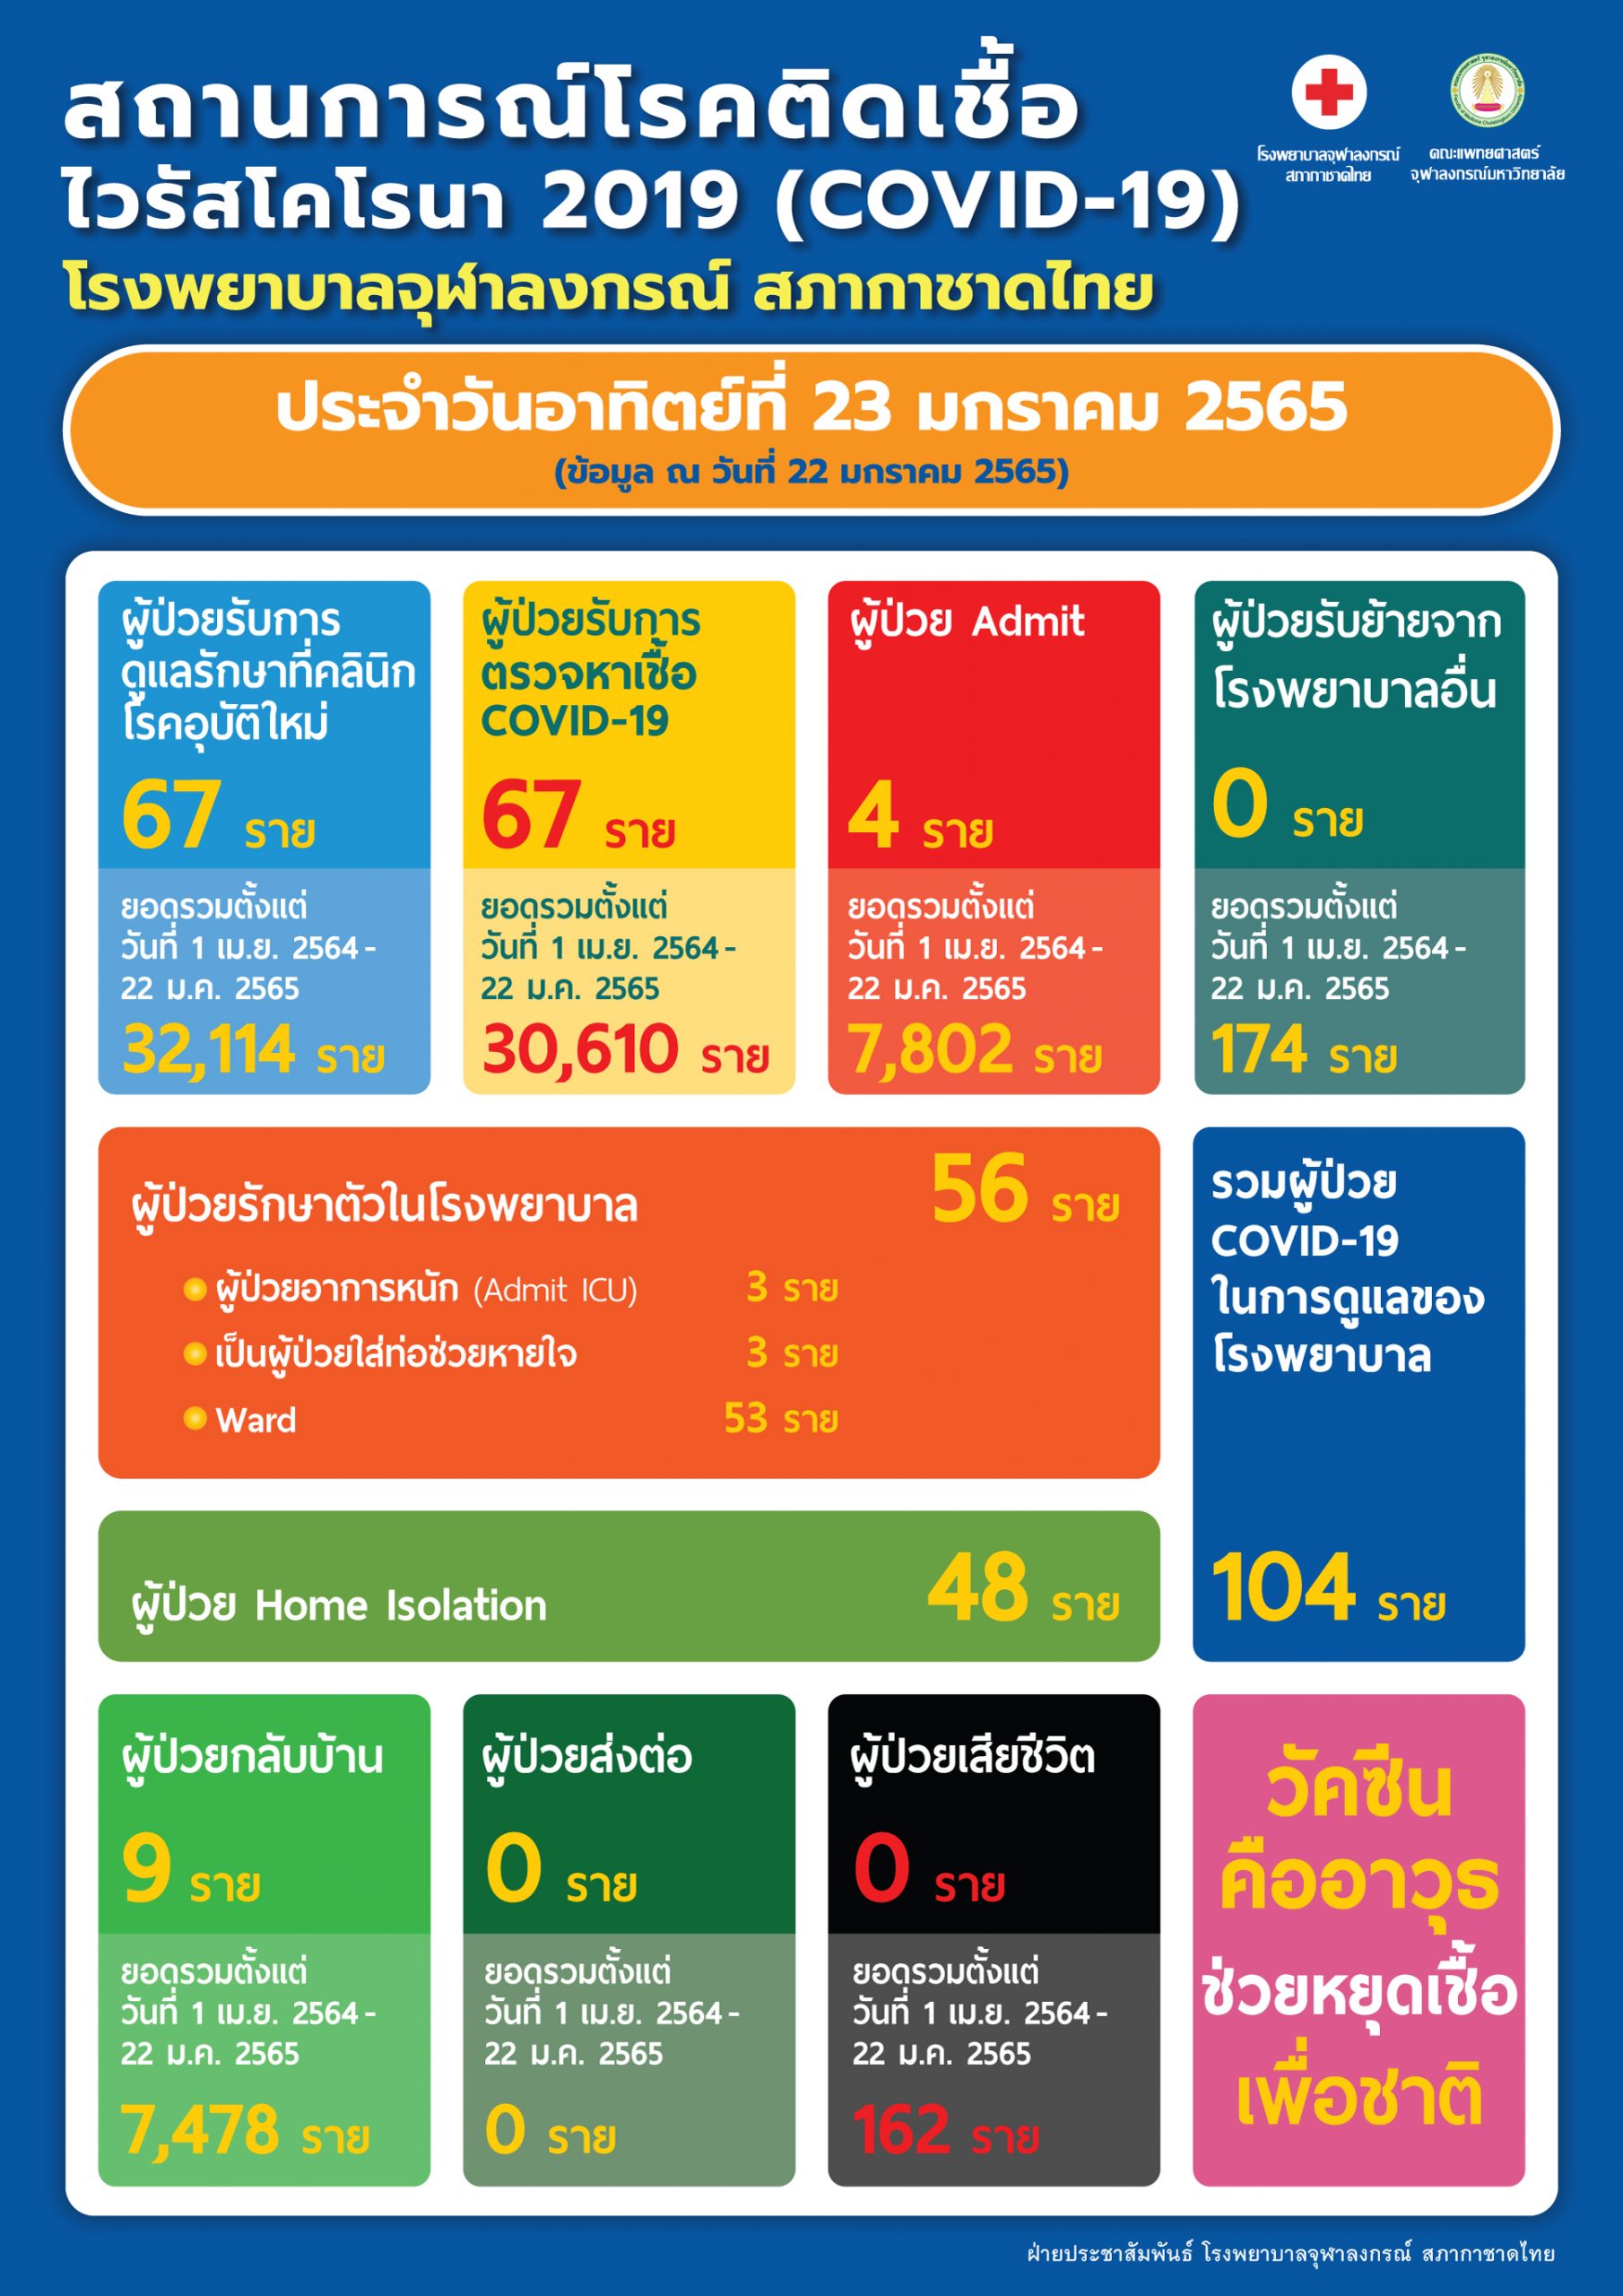 สถานการณ์โรคติดเชื้อไวรัสโคโรนา 2019 (COVID-19) โรงพยาบาลจุฬาลงกรณ์ สภากาชาดไทย ประจำวันอาทิตย์ที่ 23 มกราคม 2565